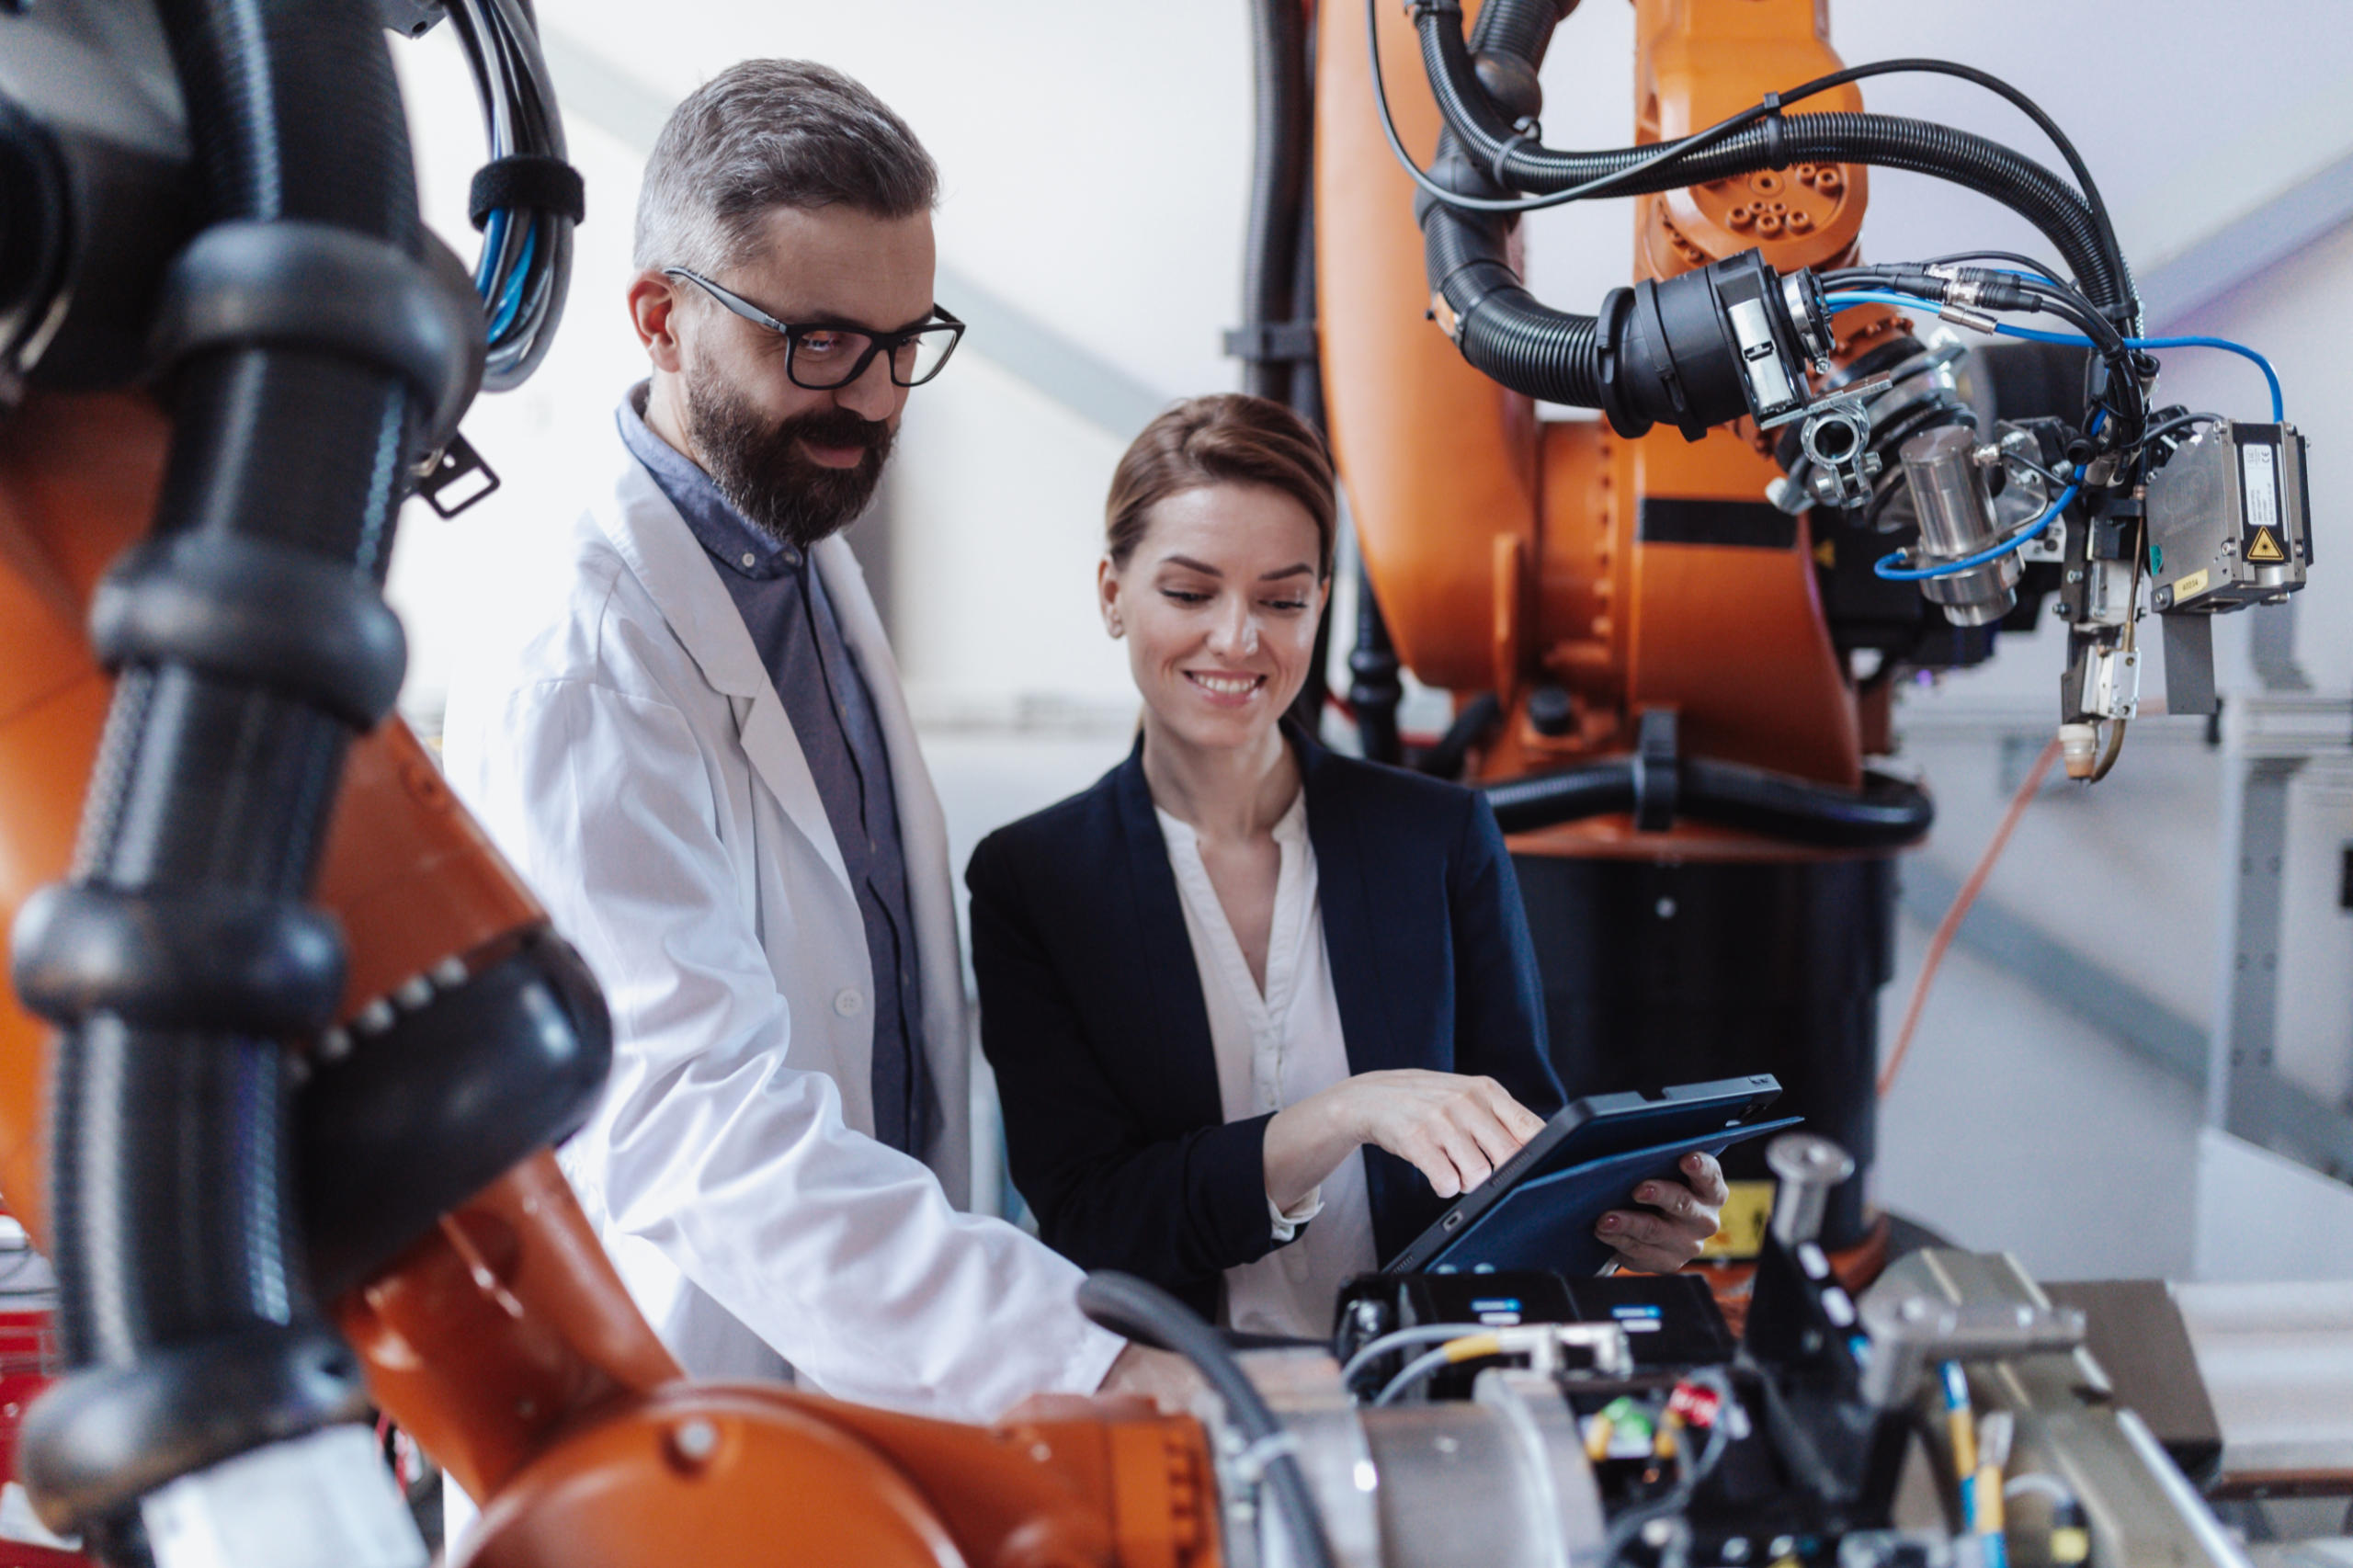 In der Fabrik eines Industrieunternehmens unterhalten sich zwei Beschäftigte vor einem Robotor über Digitalisierung.